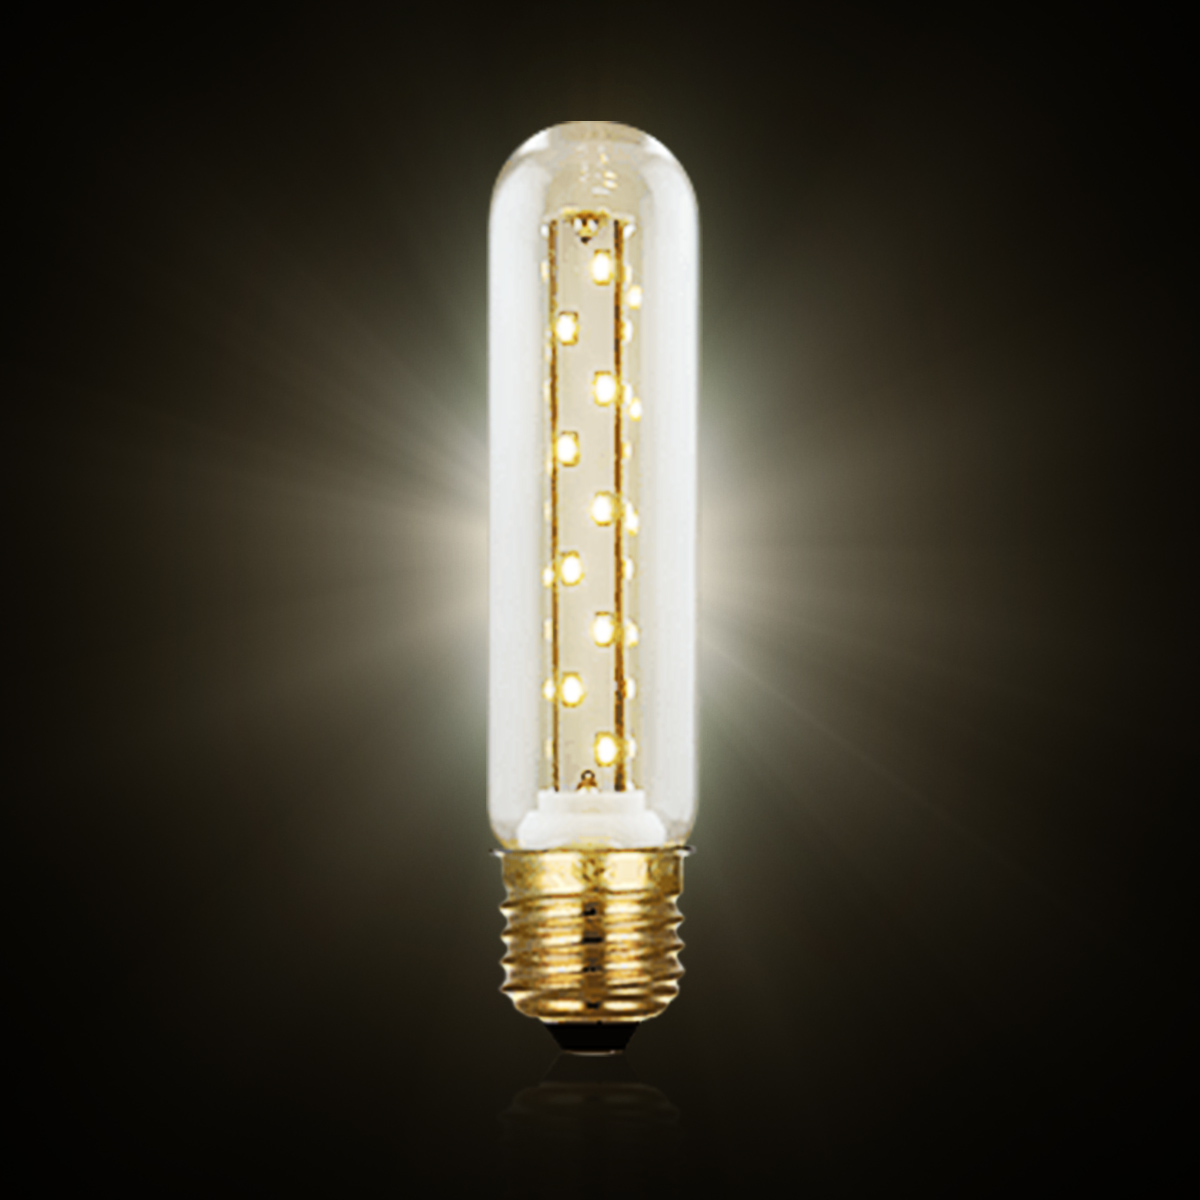 

E27 E26 T25 3W 40 Leds Retro Vintage Edison Warm White LED Light Lamp Bulb AC220V